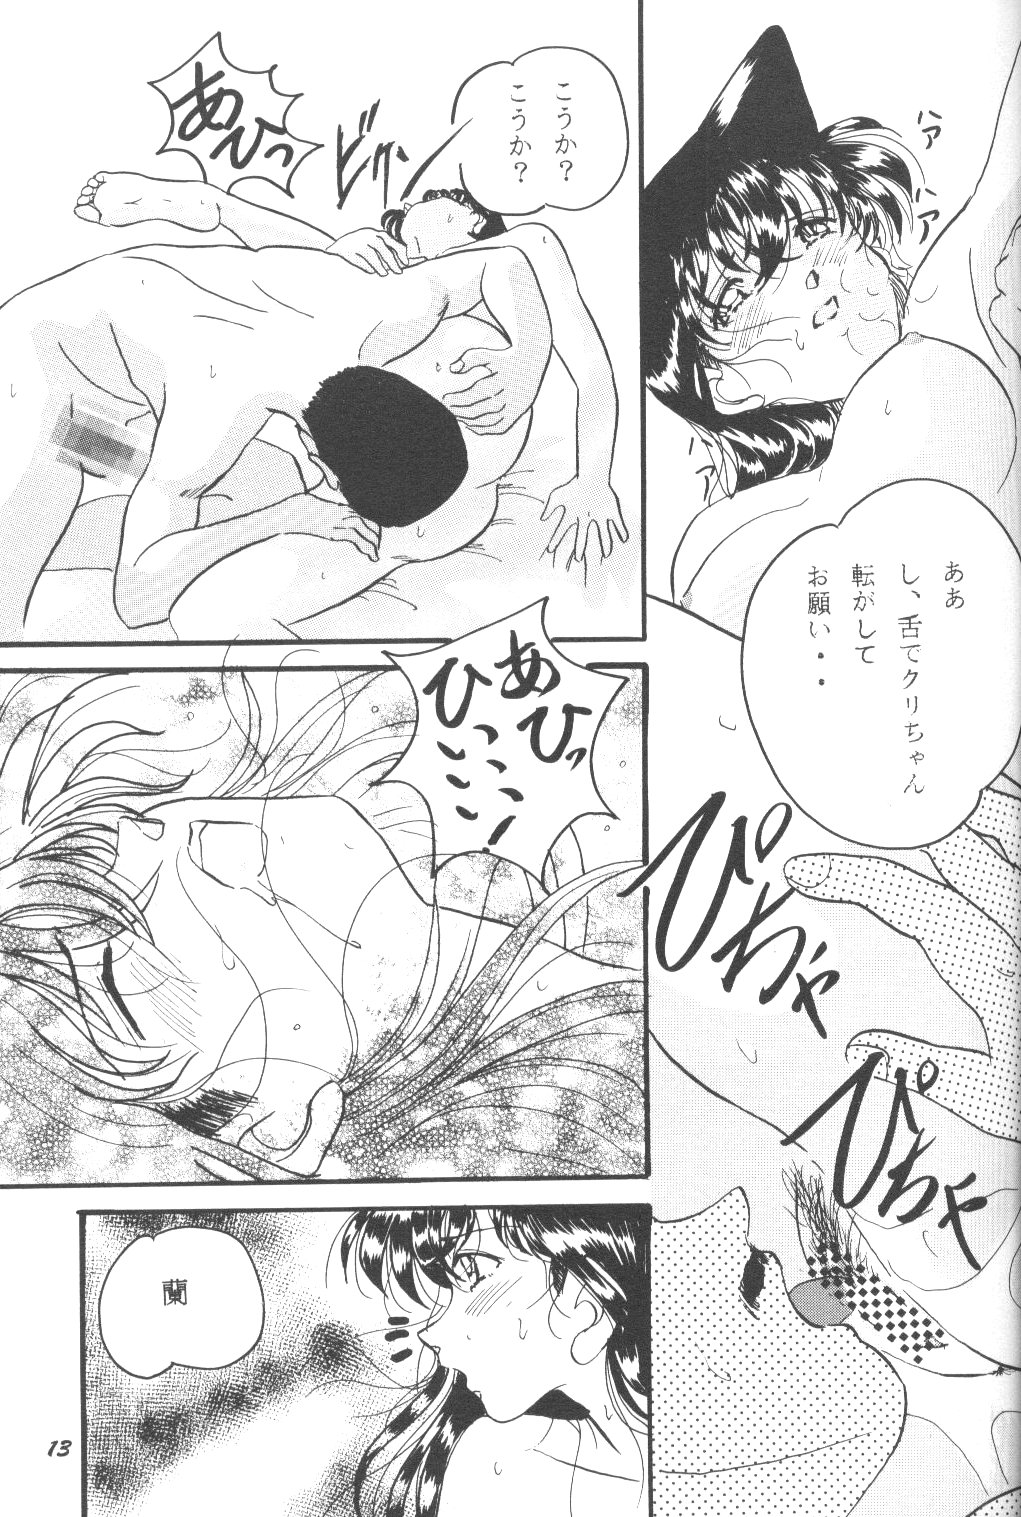 [Studio Boxer (Shima Takashi, Taka)] HOHETO 23 (Detective Conan) page 12 full